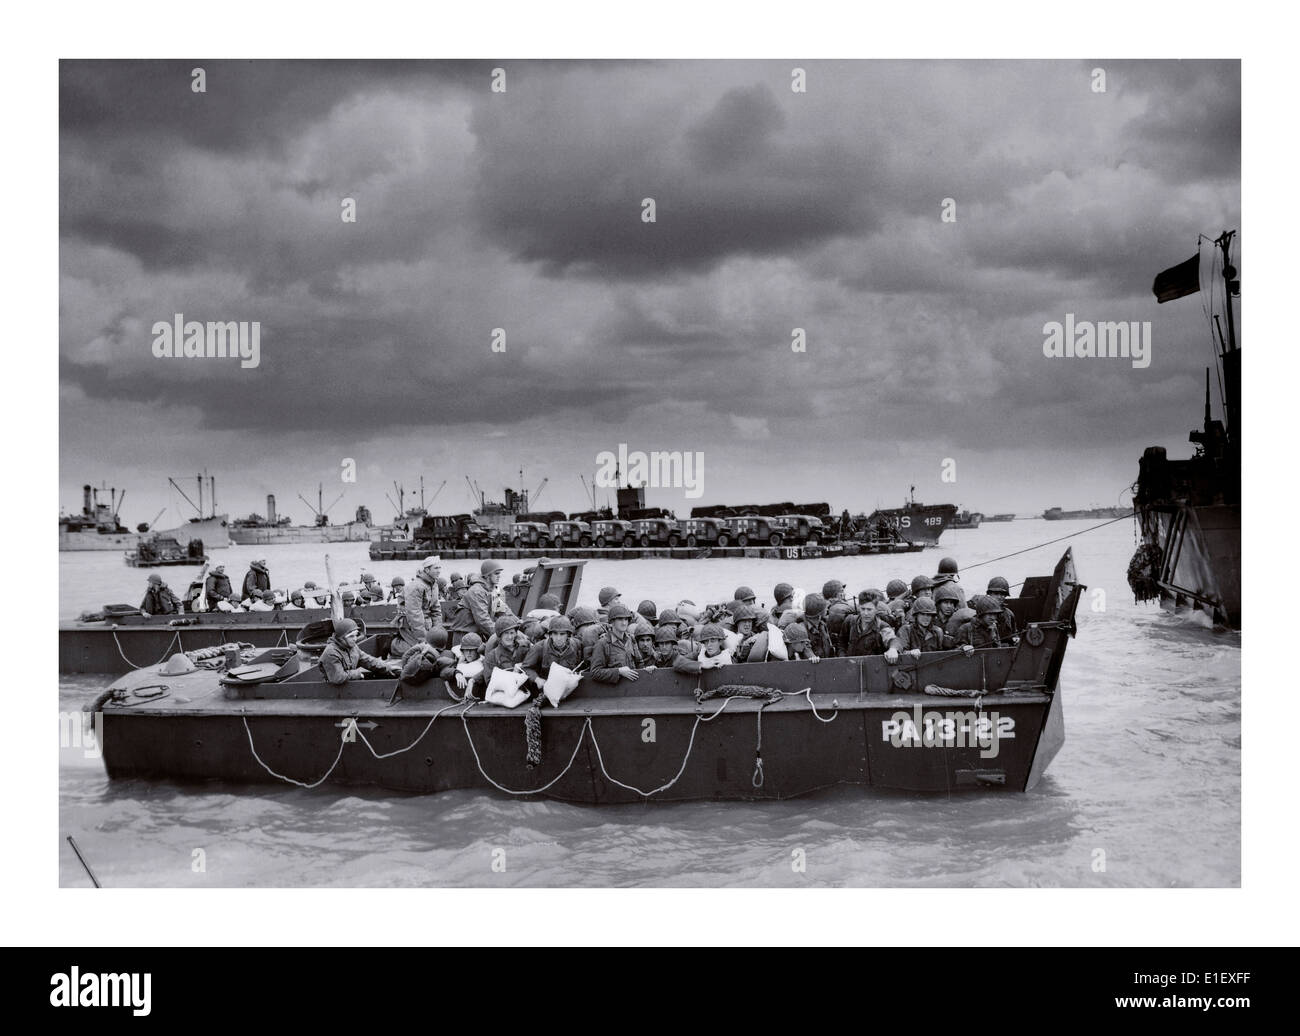 D-Day Omaha, l'invasion des troupes américaines dans la région de beach landing craft sous un ciel noir Normandie France 6 juin 1944 Banque D'Images